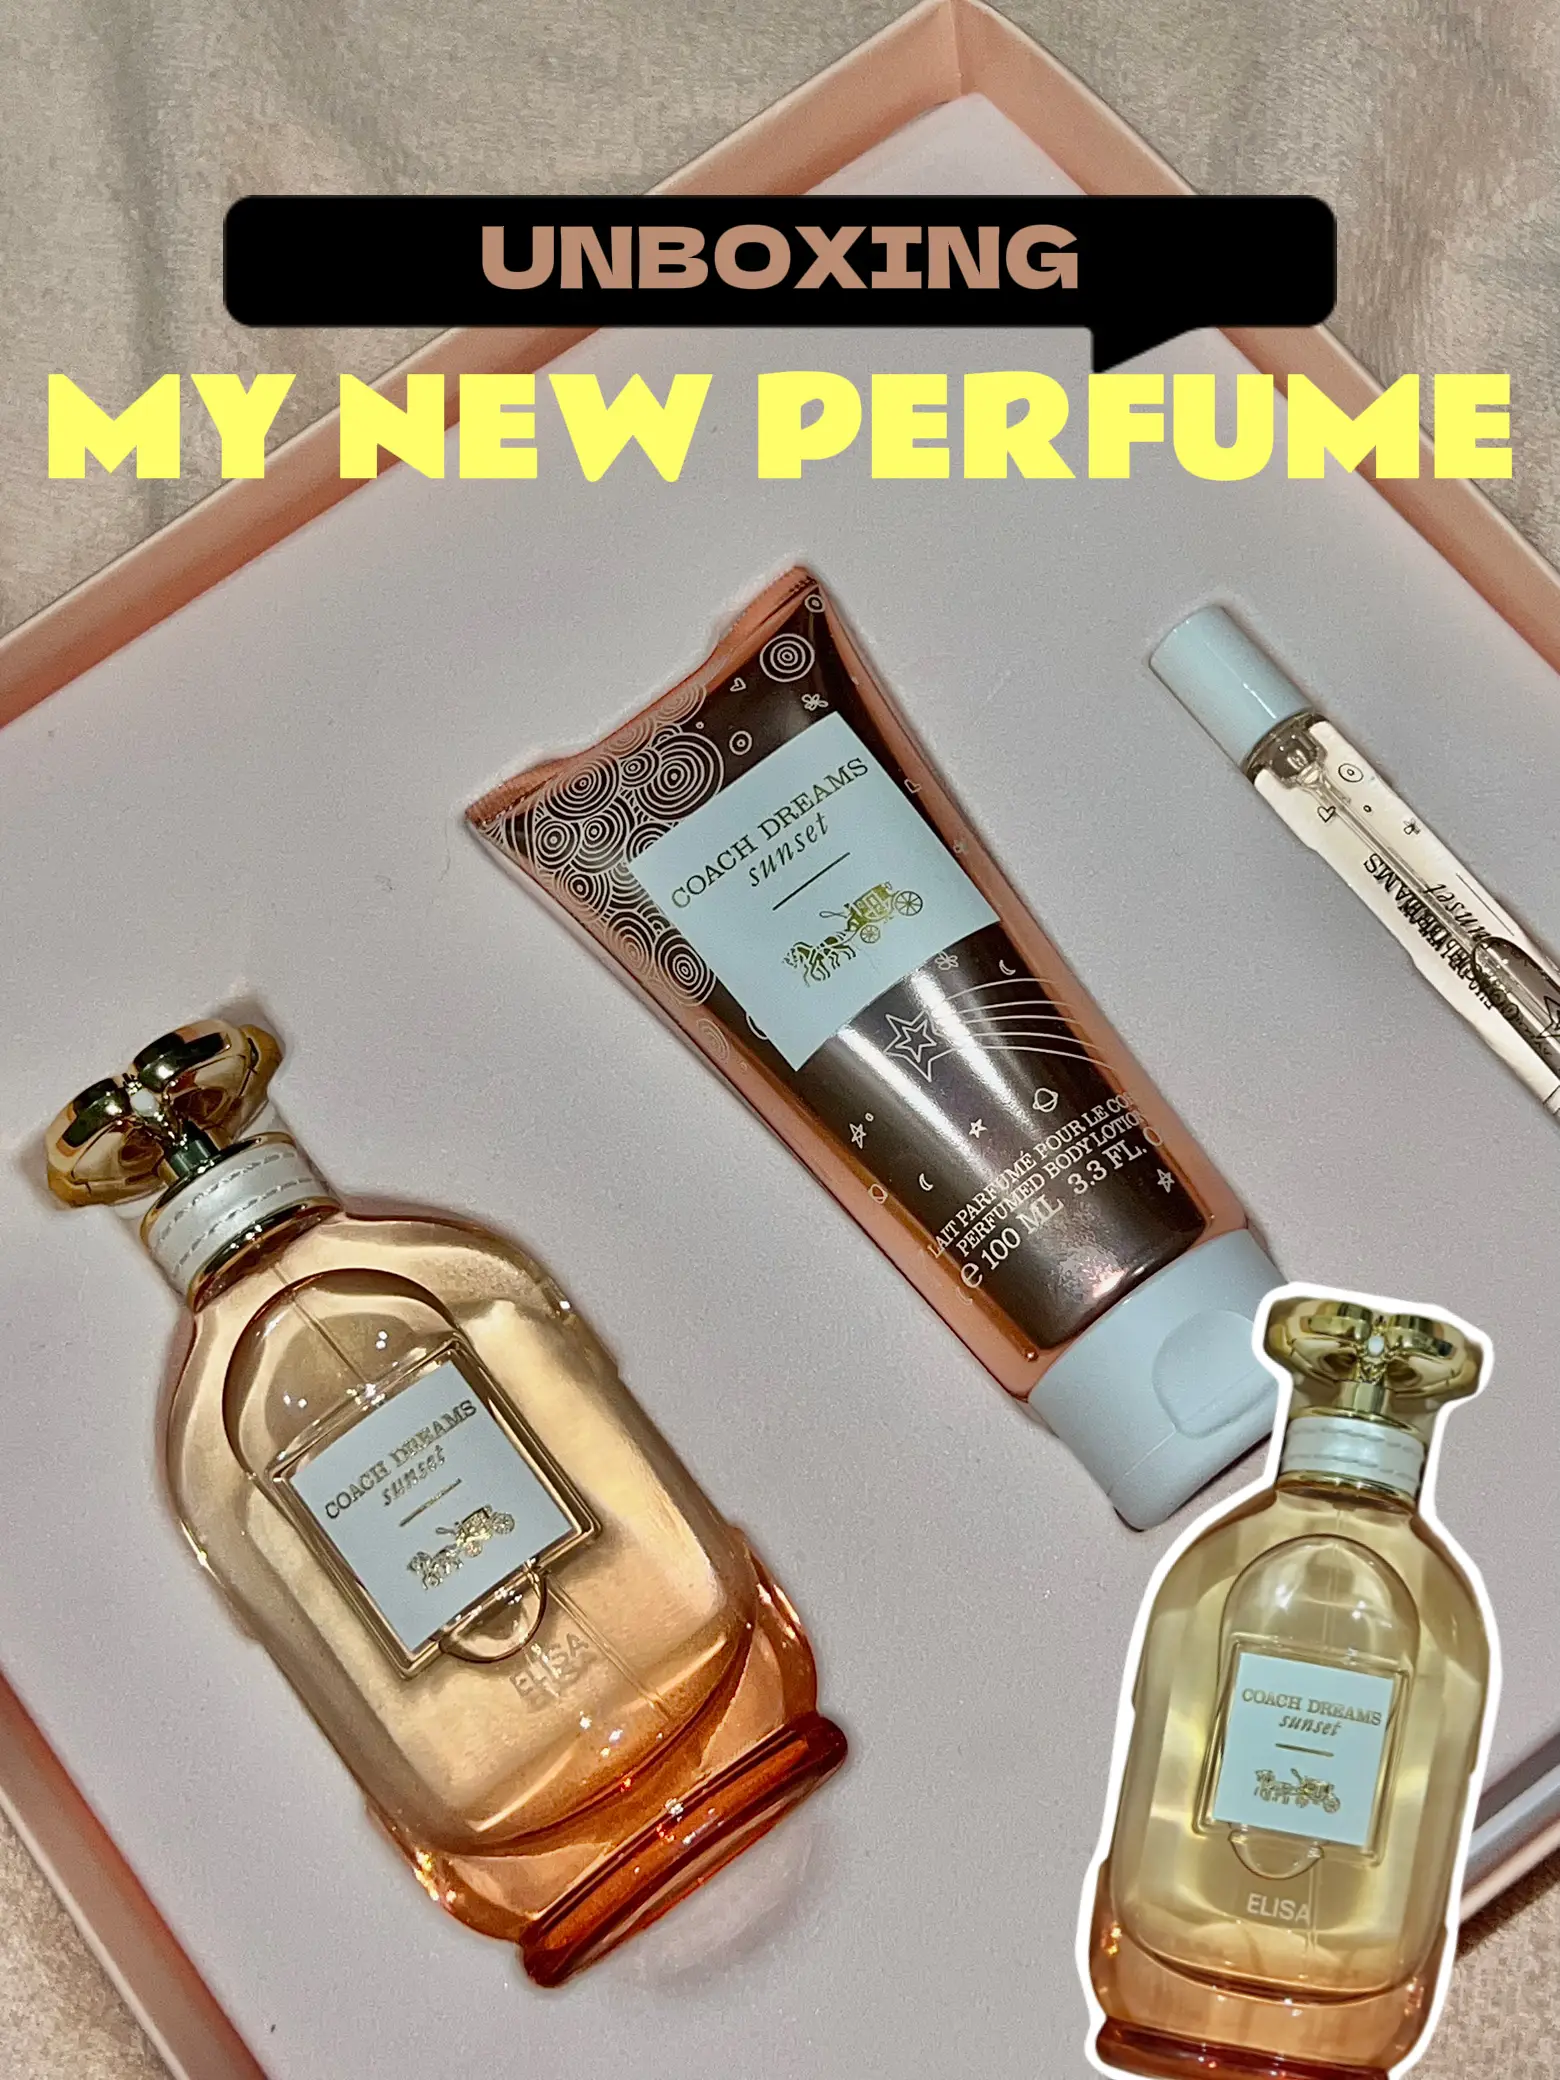 Chanel - CHANCE EAU TENDRE - Eau De Parfum Vaporizer - Luxury